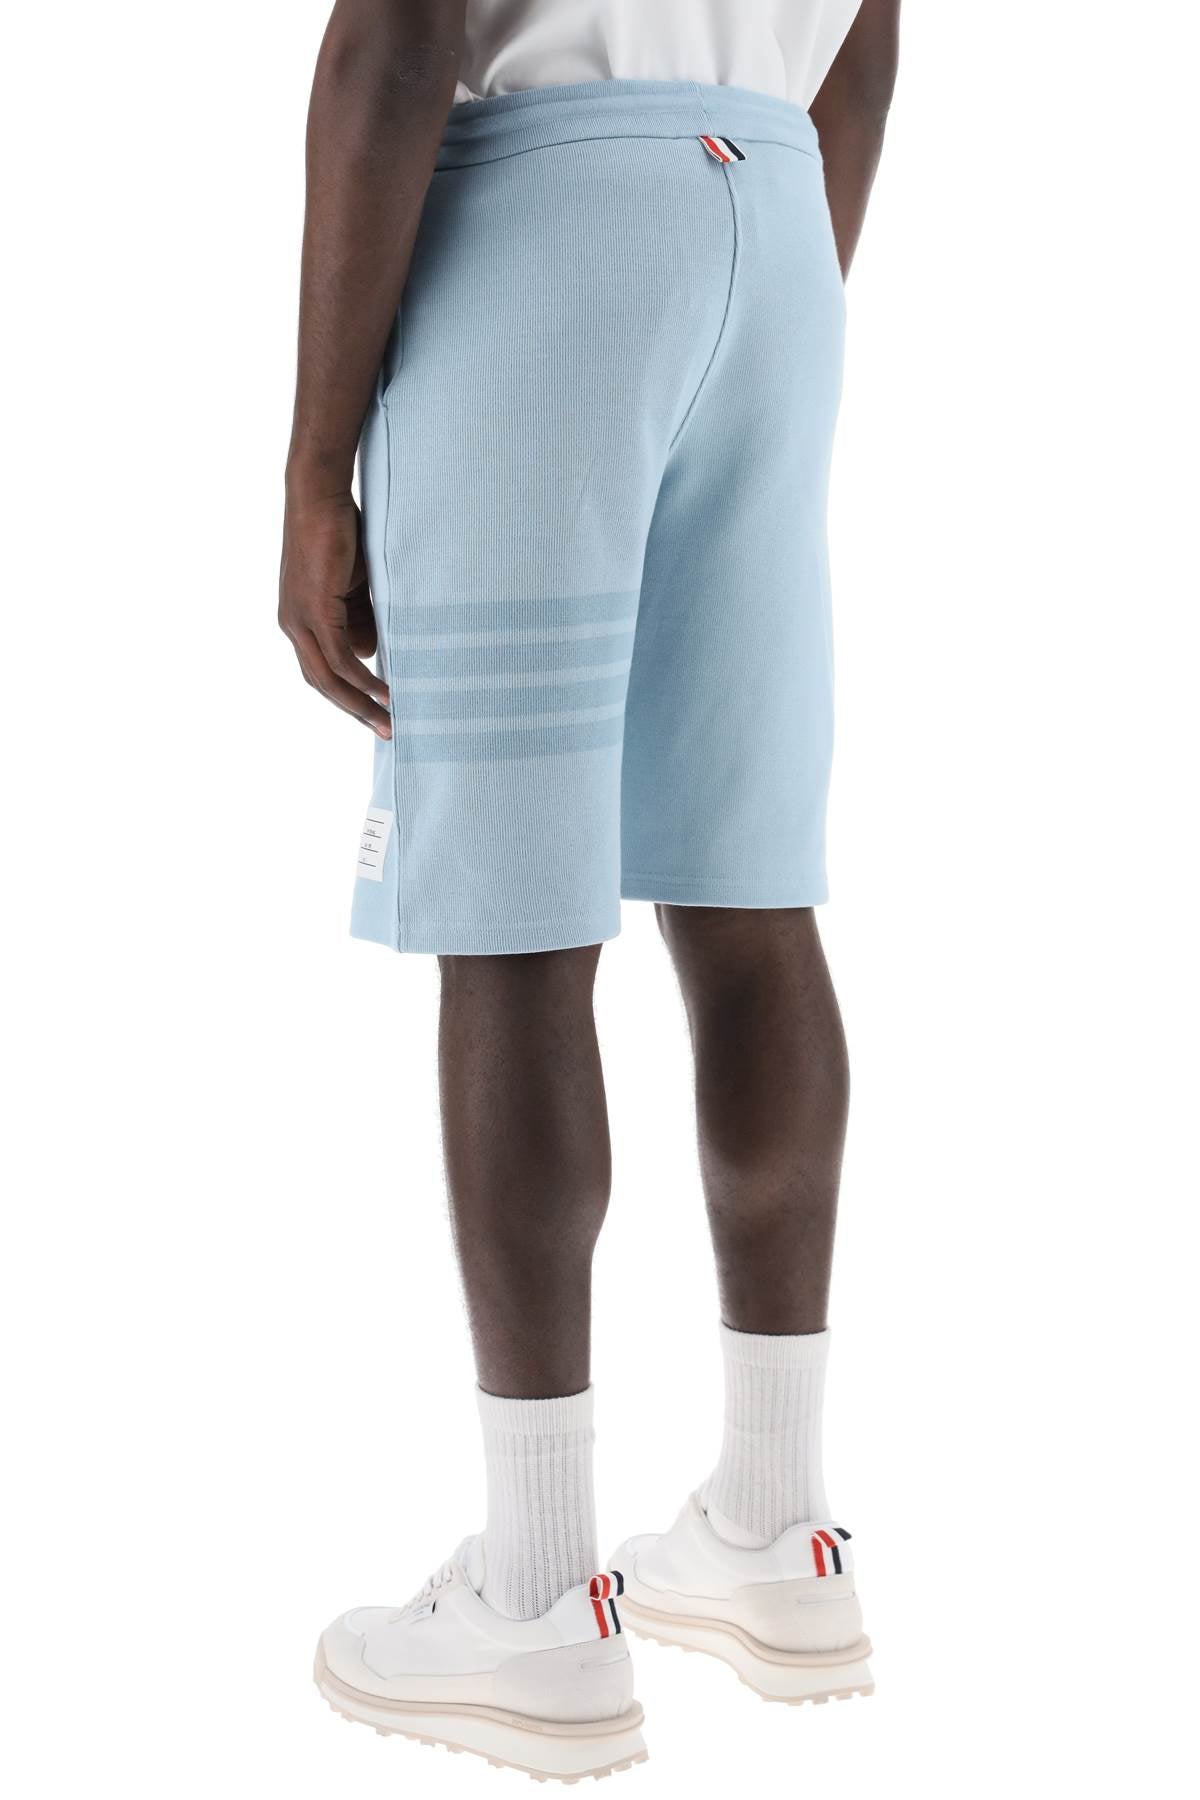 Quần shorts 4-Bar nam màu xanh nhạt thêu sợi bông cho bộ sưu tập Xuân-Hè 24 của Thom Browne